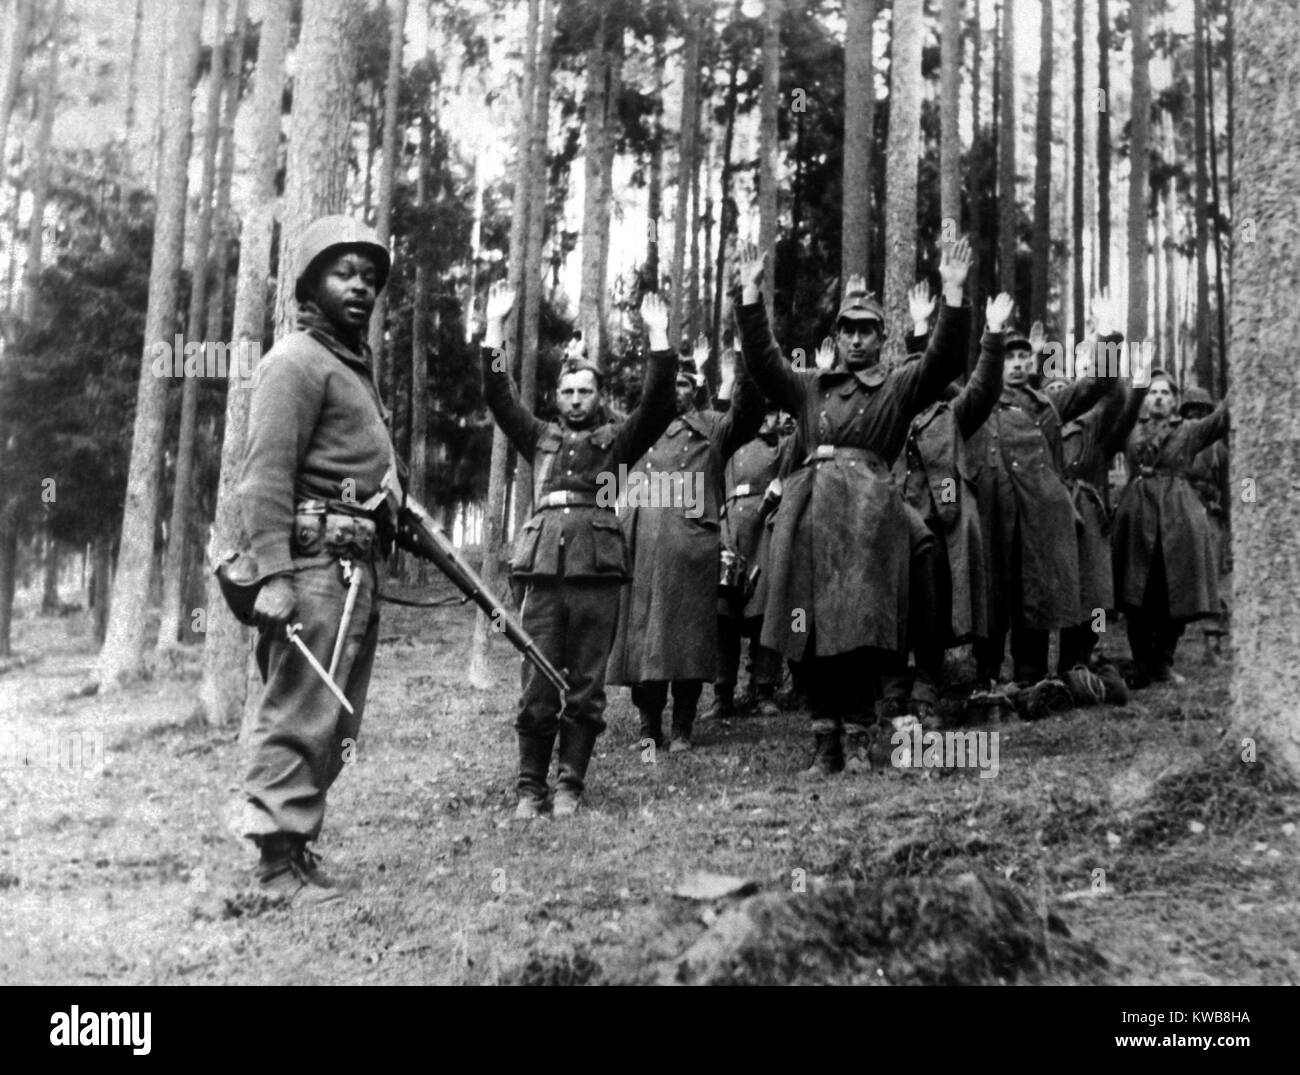 Un soldat afro-américain de la monte la garde sur un groupe de prisonniers nazis. Les Allemands ont été capturés dans la forêt environnante par les États-Unis 12e Division blindée, avril 1945, la Première Guerre mondiale 2. (BSLOC 2014 8 95) Banque D'Images